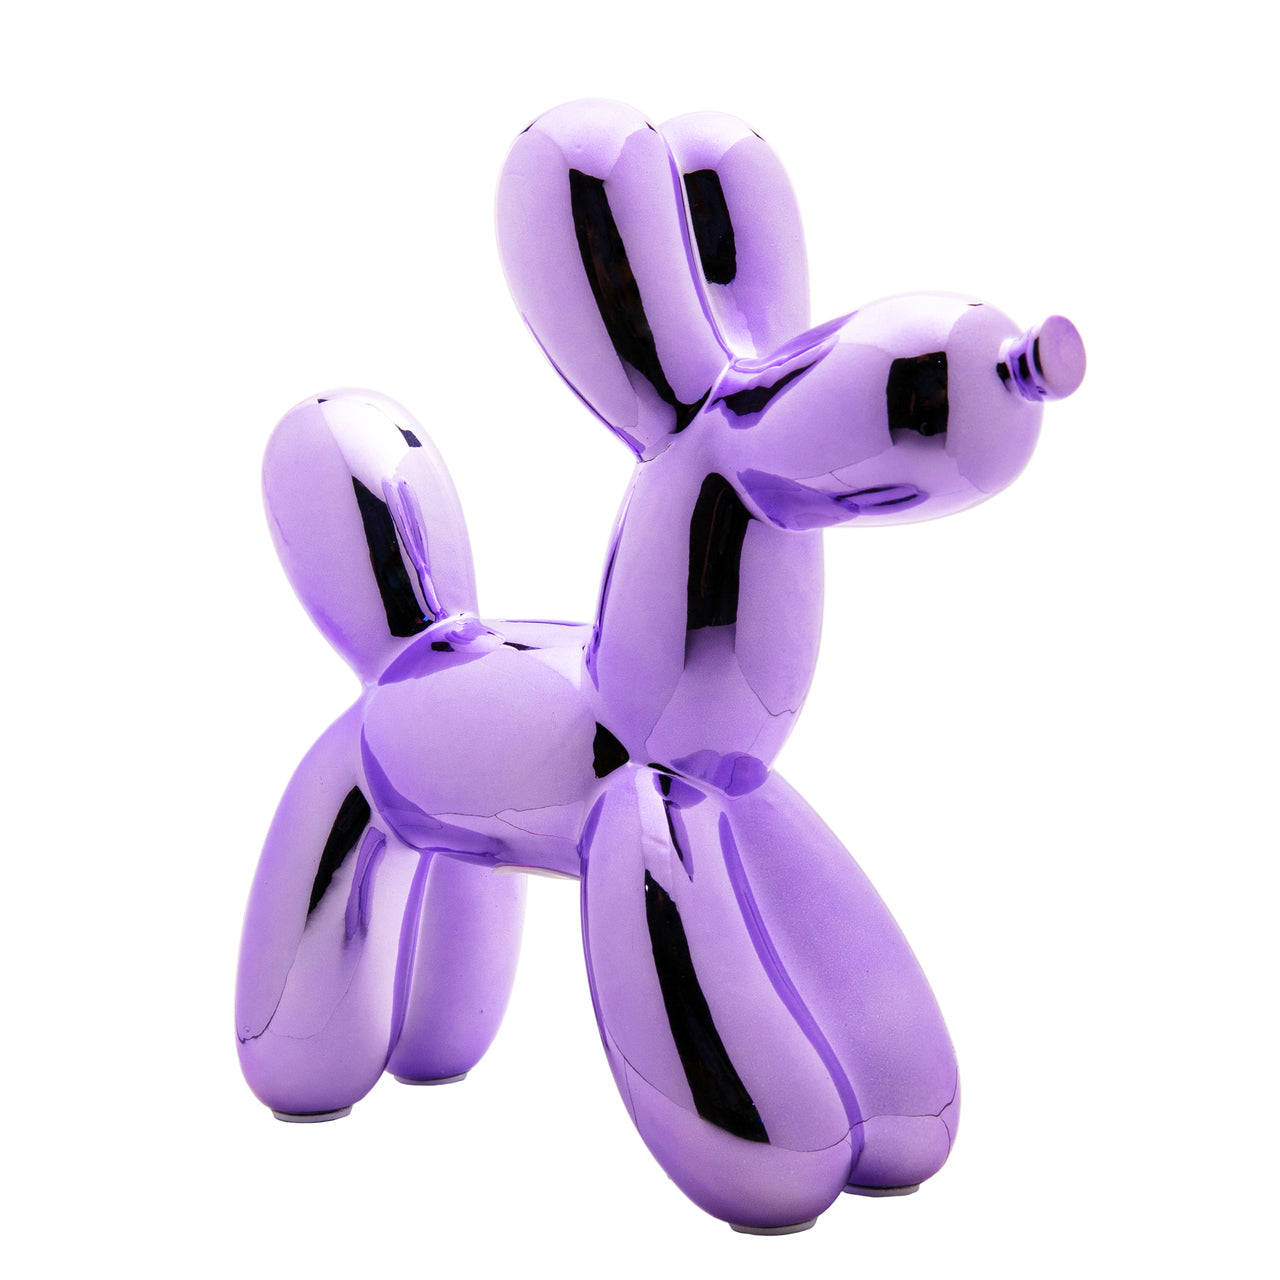 Ceramic Balloon Dog Banks